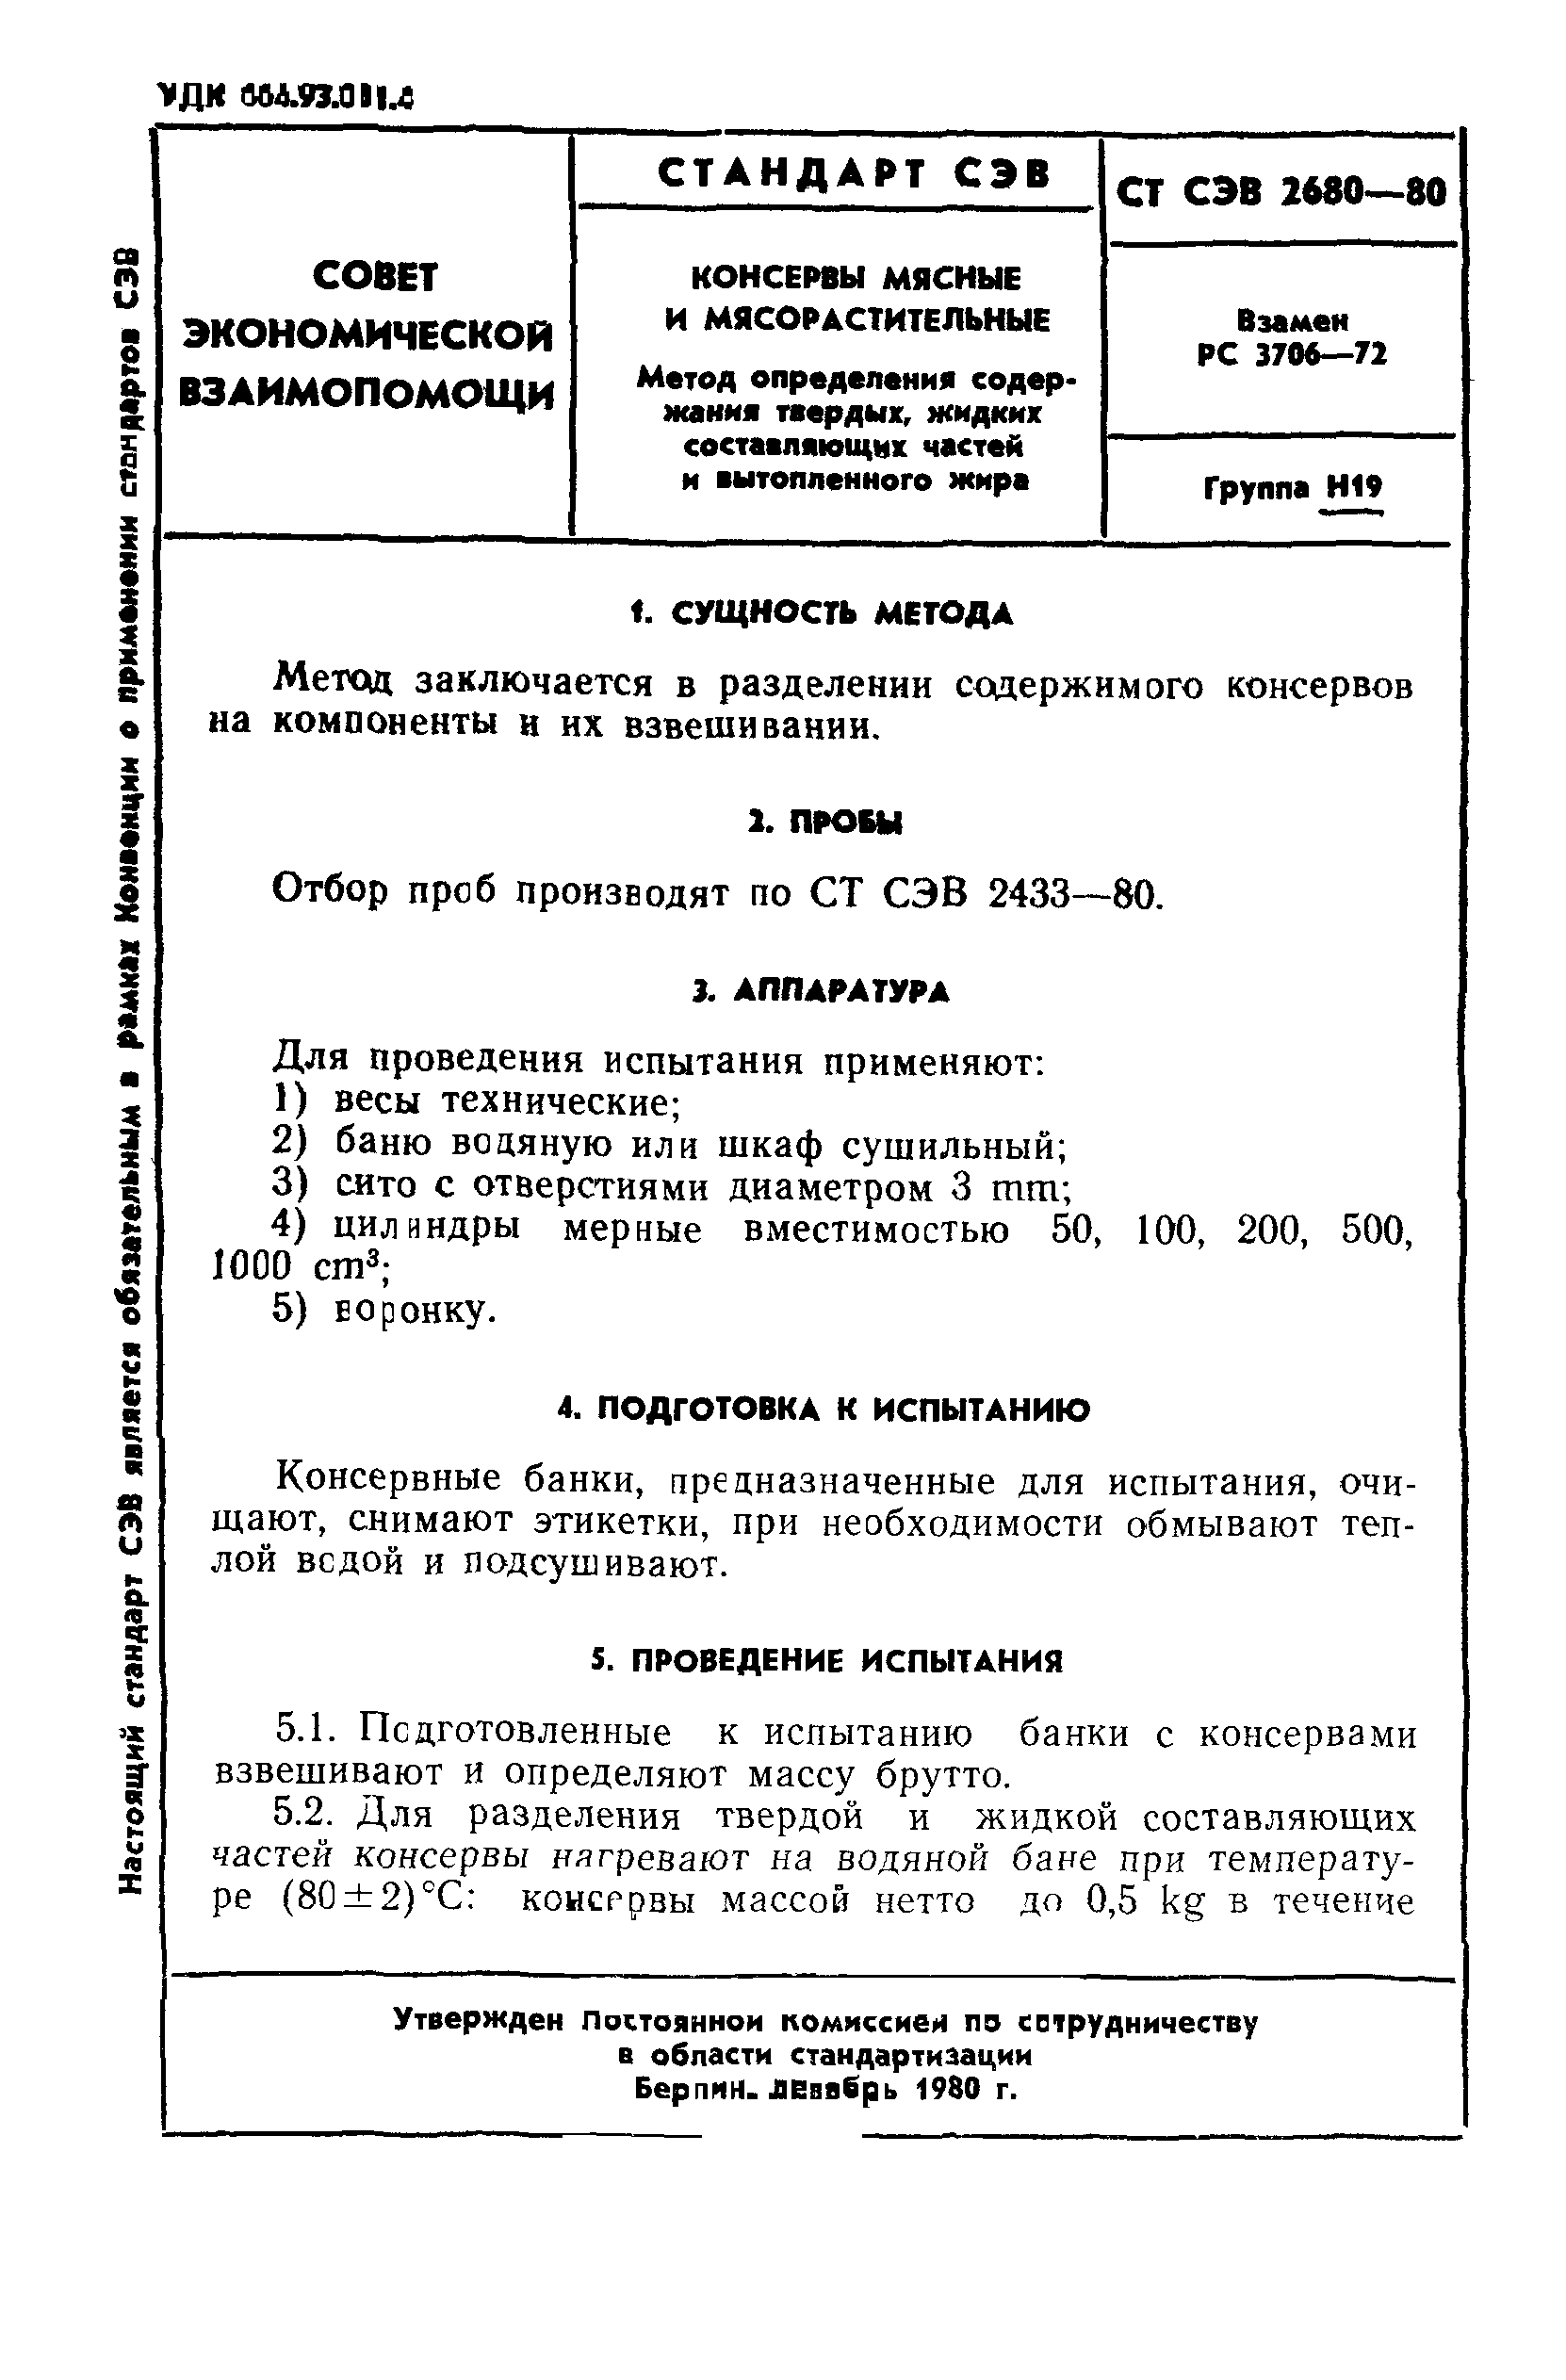 СТ СЭВ 2680-80